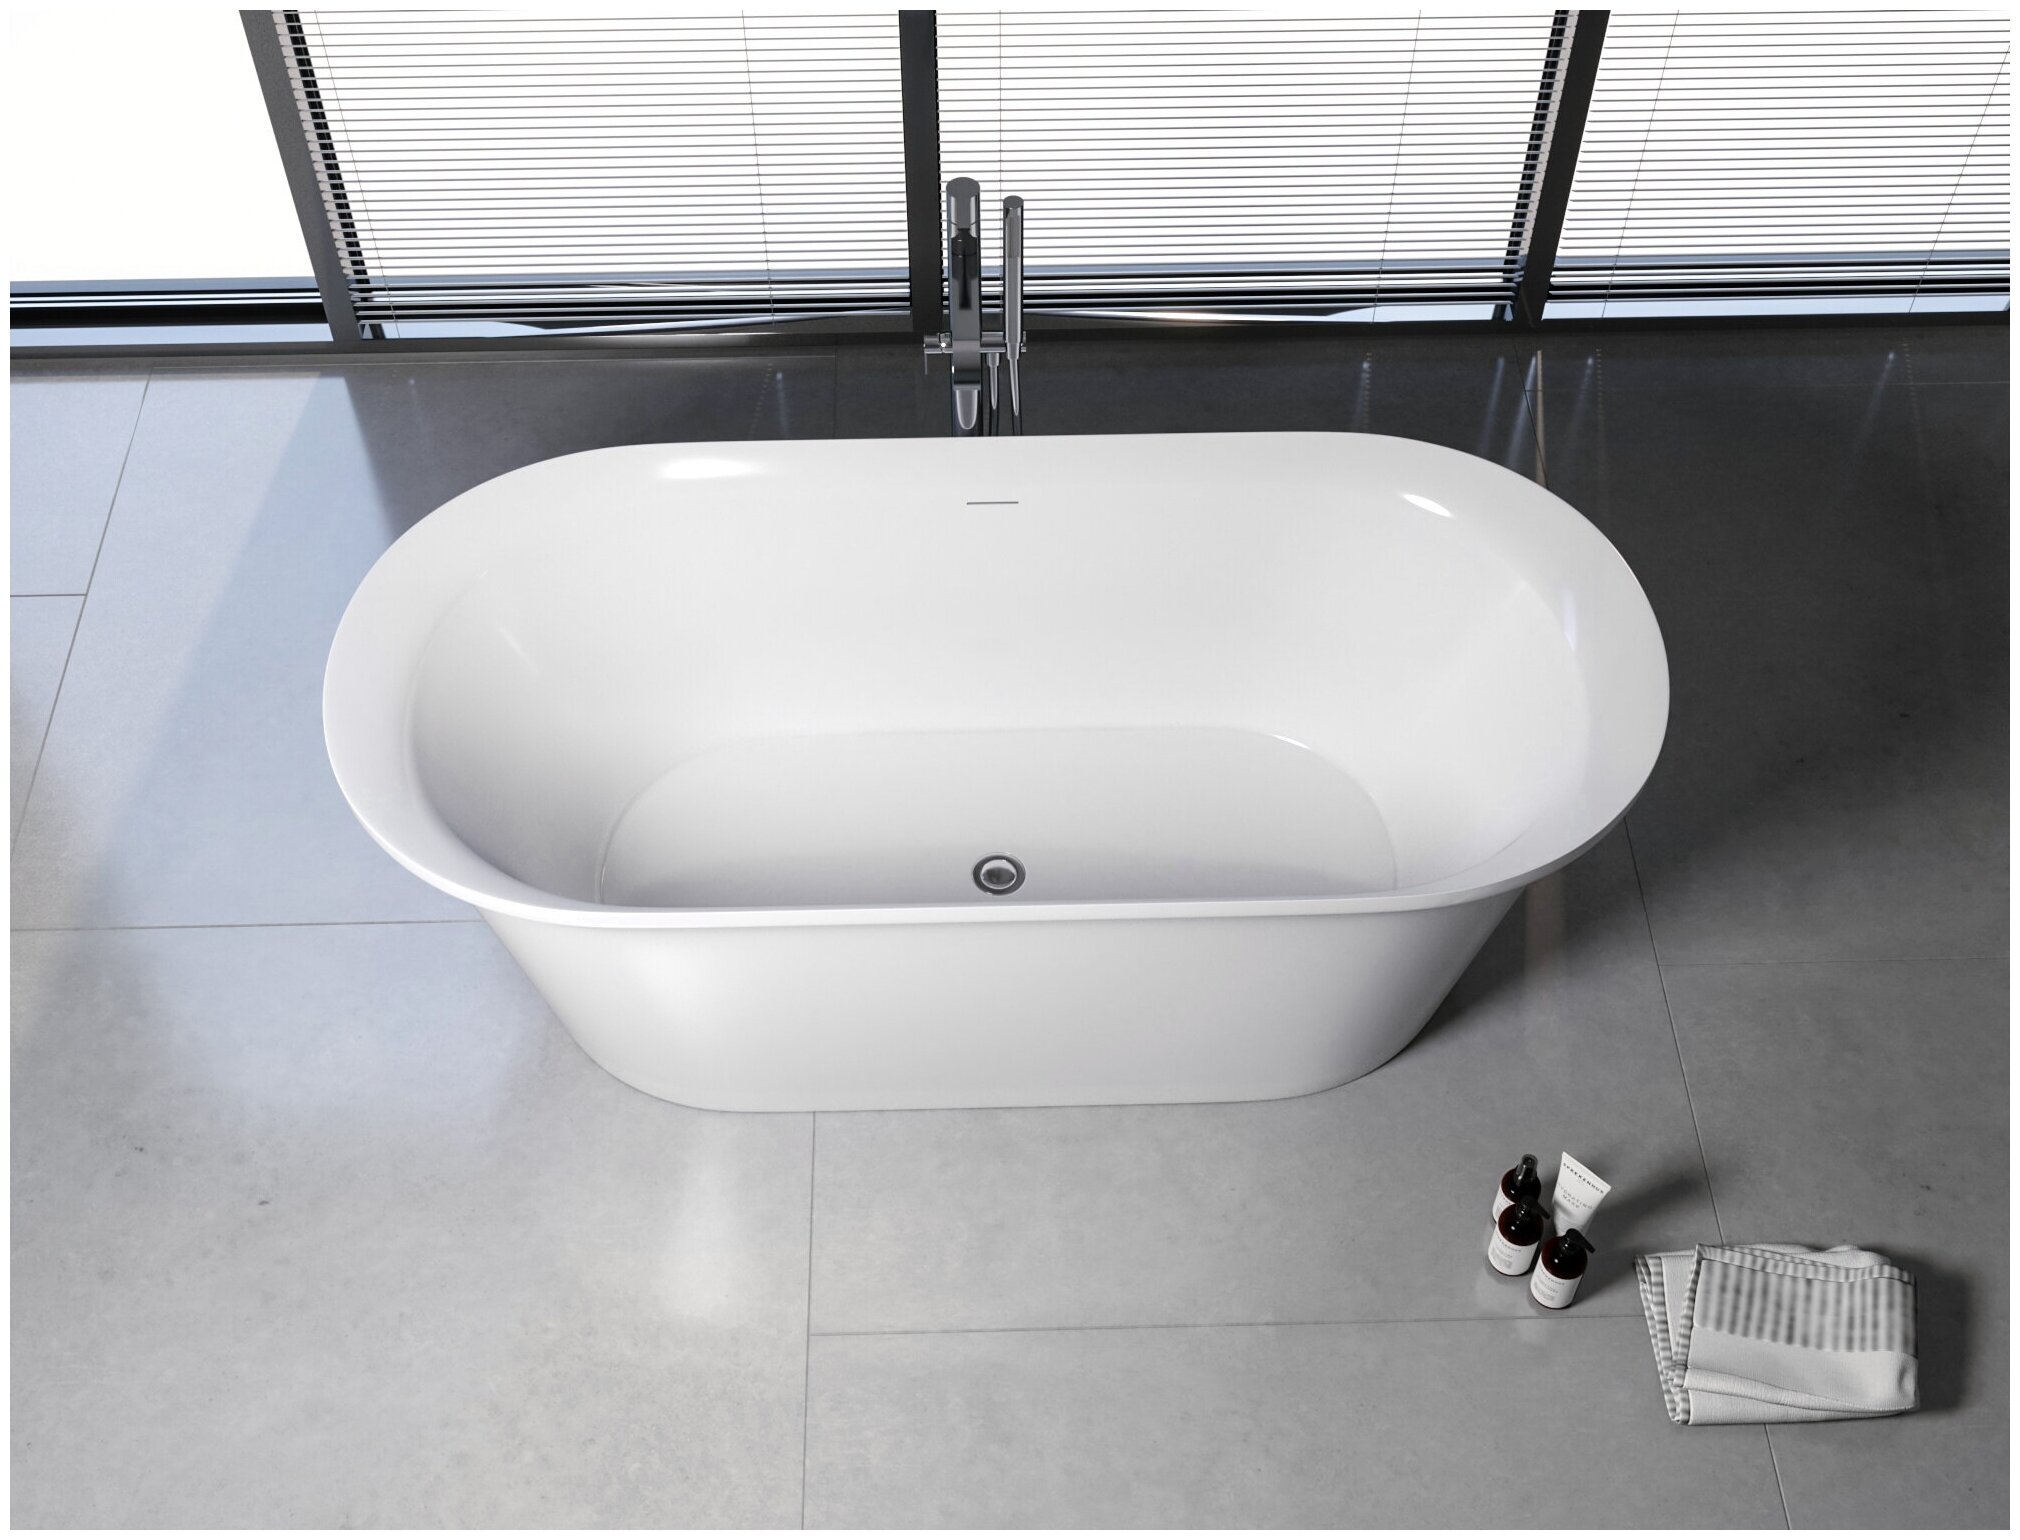 Smart 170. Акриловая ванна Aquanet Family Smart 170x78 88778 Gloss finish. Акриловая ванна Aquanet Smart 170x78 (88778-GW). Cielo Shui Comfort ванна 170x87x53см., отдельностоящая, цвет: матовый белый. Акриловая ванна Aquanet trend 260052 170x80, белая матовая.